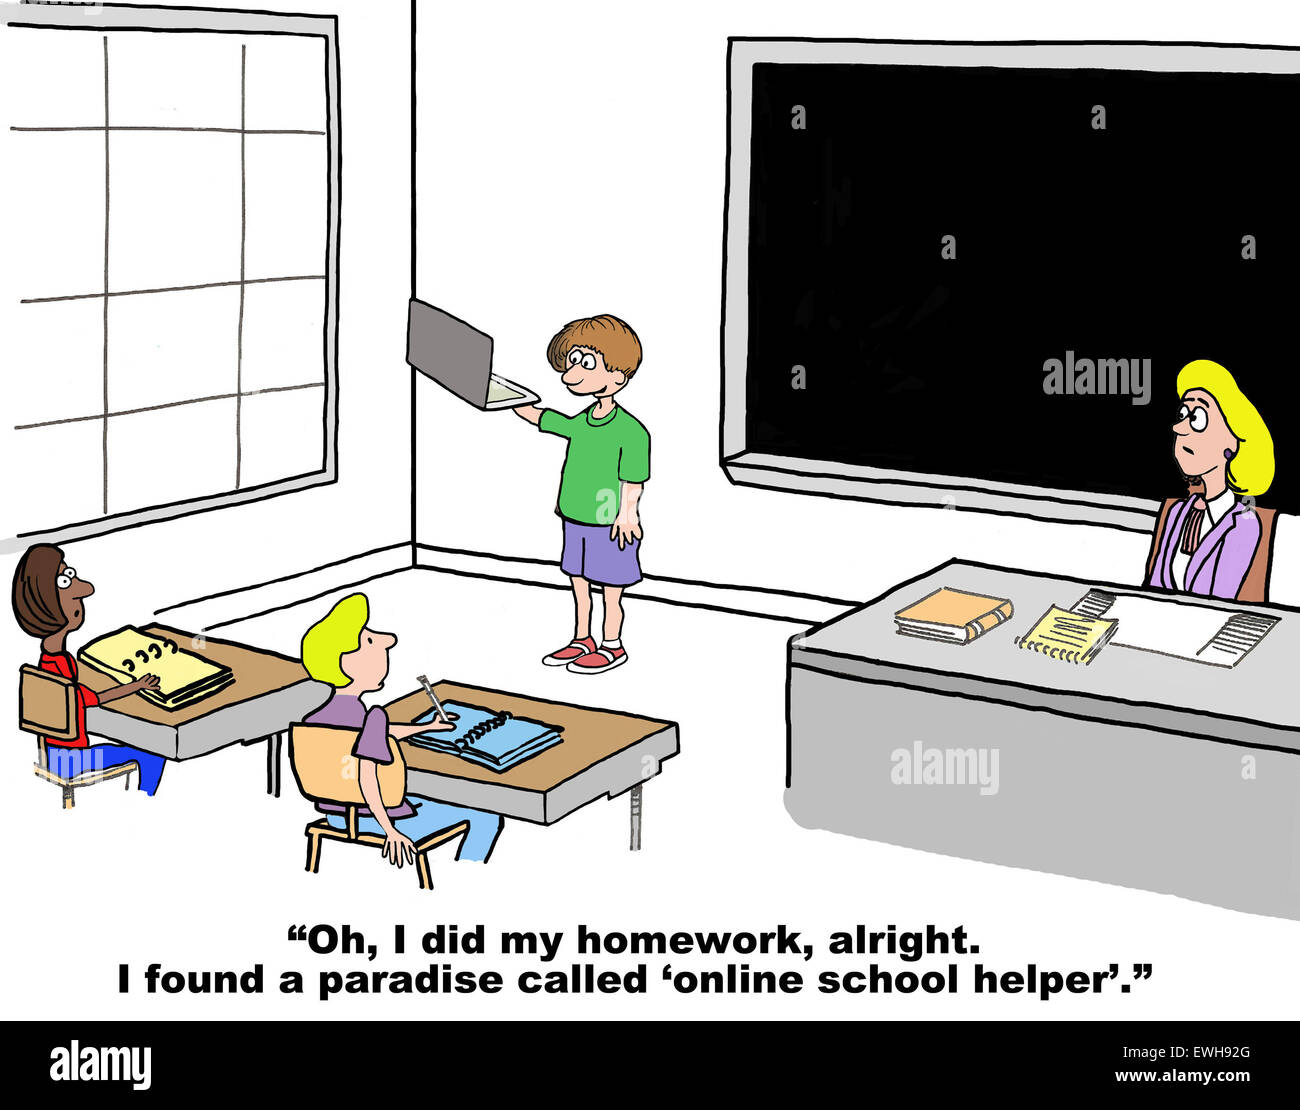 Istruzione cartoon di uno studente in possesso di un tablet e dicendo: "Ho fatto i miei compiti... un paradiso chiamato "scuola online helper''. Foto Stock